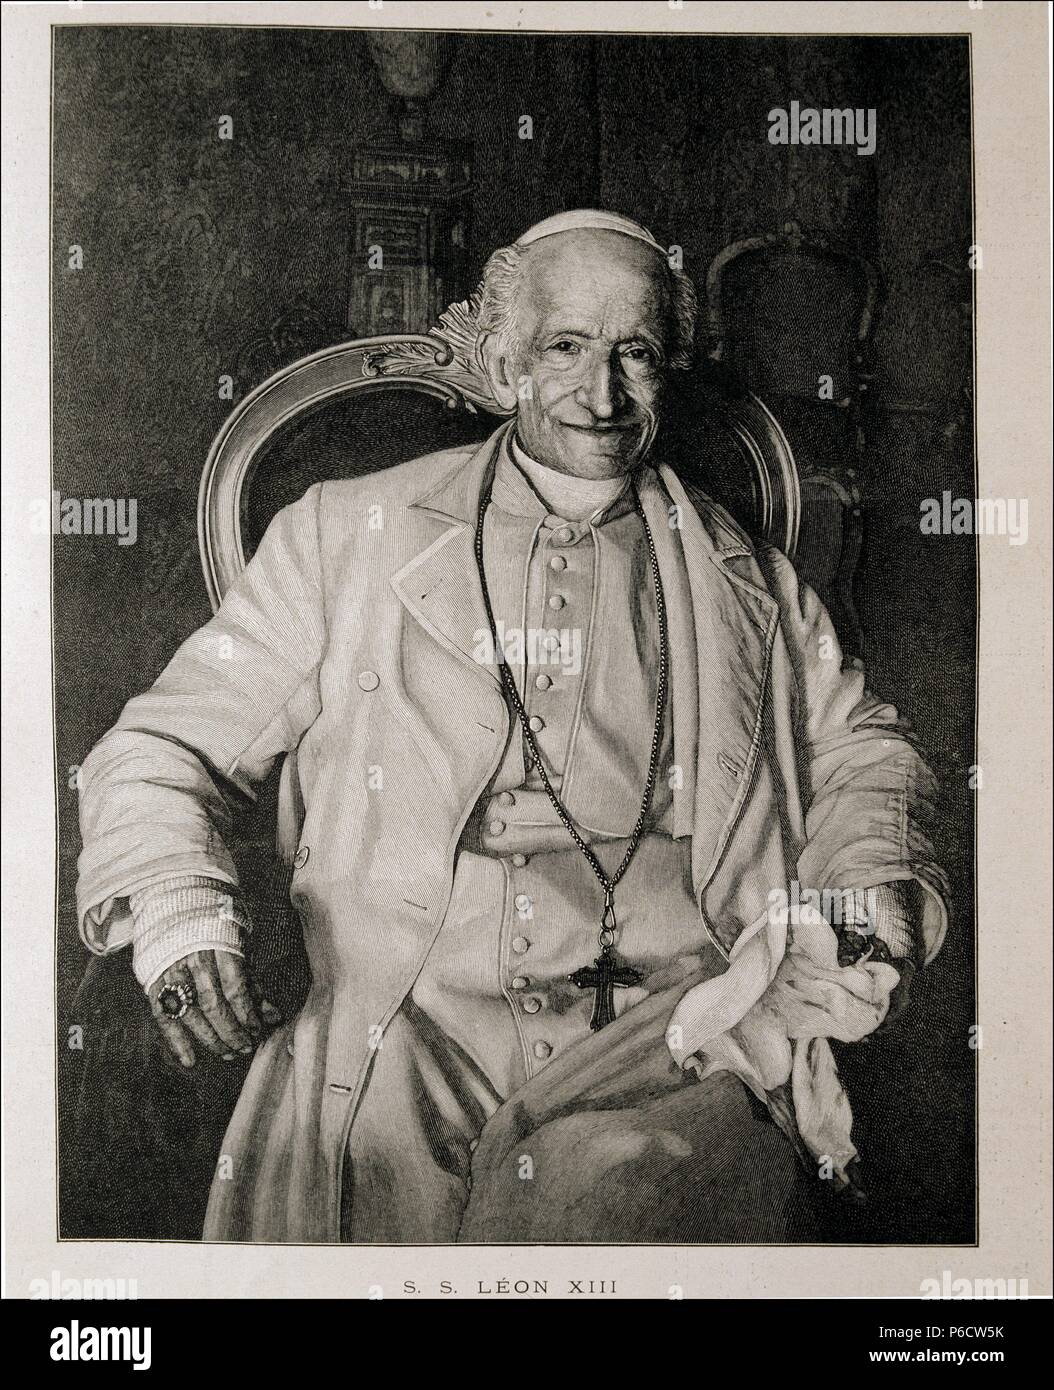 LEON XIII ( VINCENZO GIOACCHINO PECCI ). PAPA DESEDE 1878-1903. GRABADO. L' ILLUSTRATION. Stock Photo